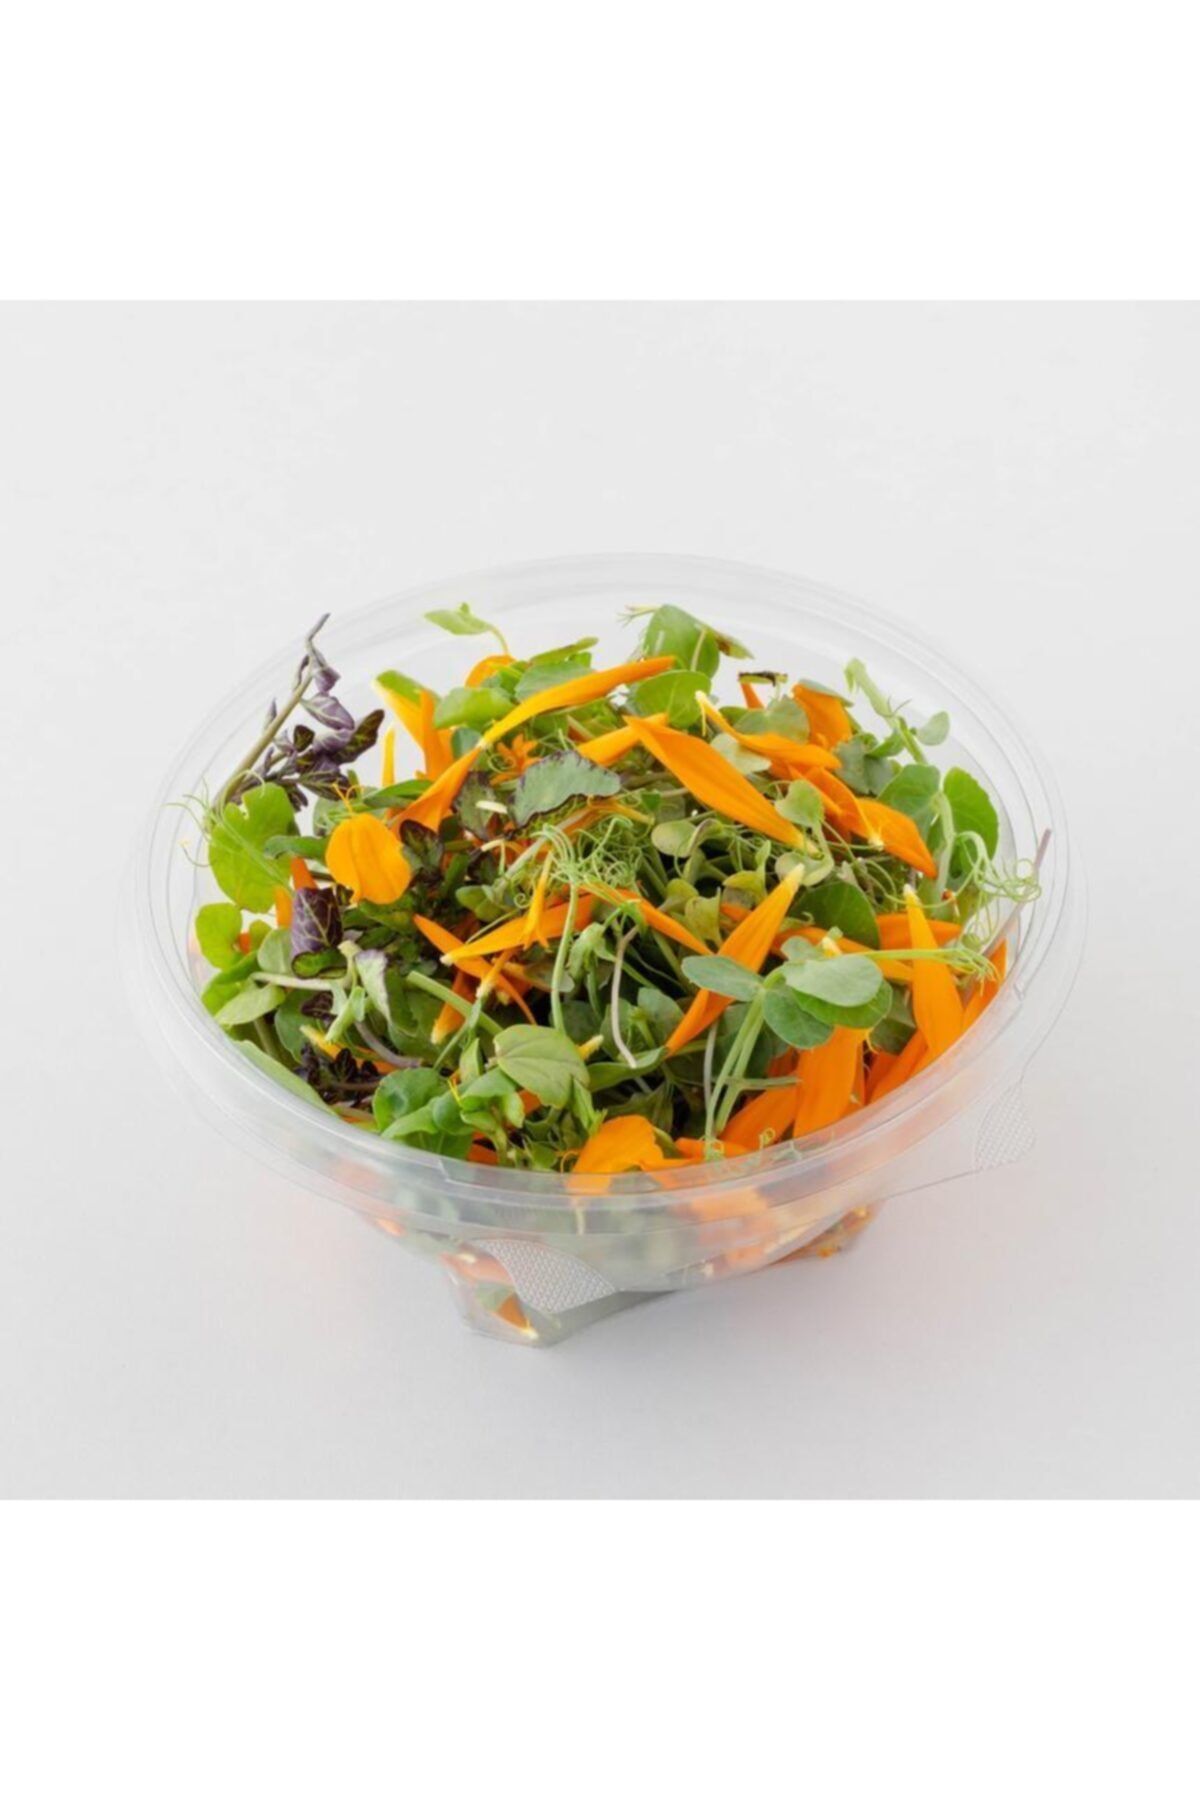 Mimi Çiftliği Yemeye Hazır Filiz Salatası - Sporcu Salata